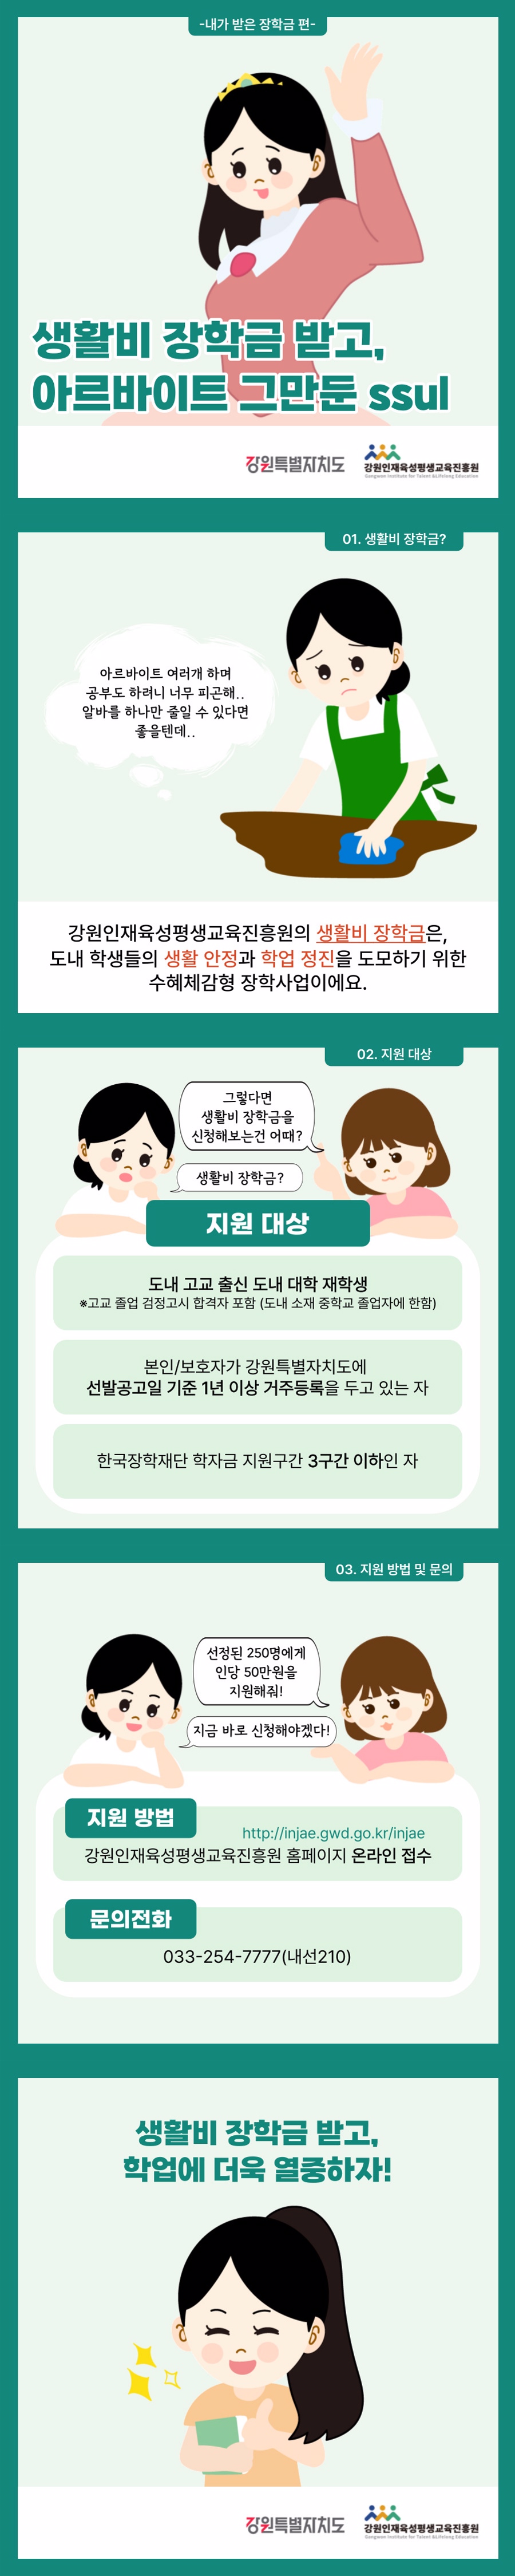 제7회 공모전_카드뉴스부문 장려상1.jpg